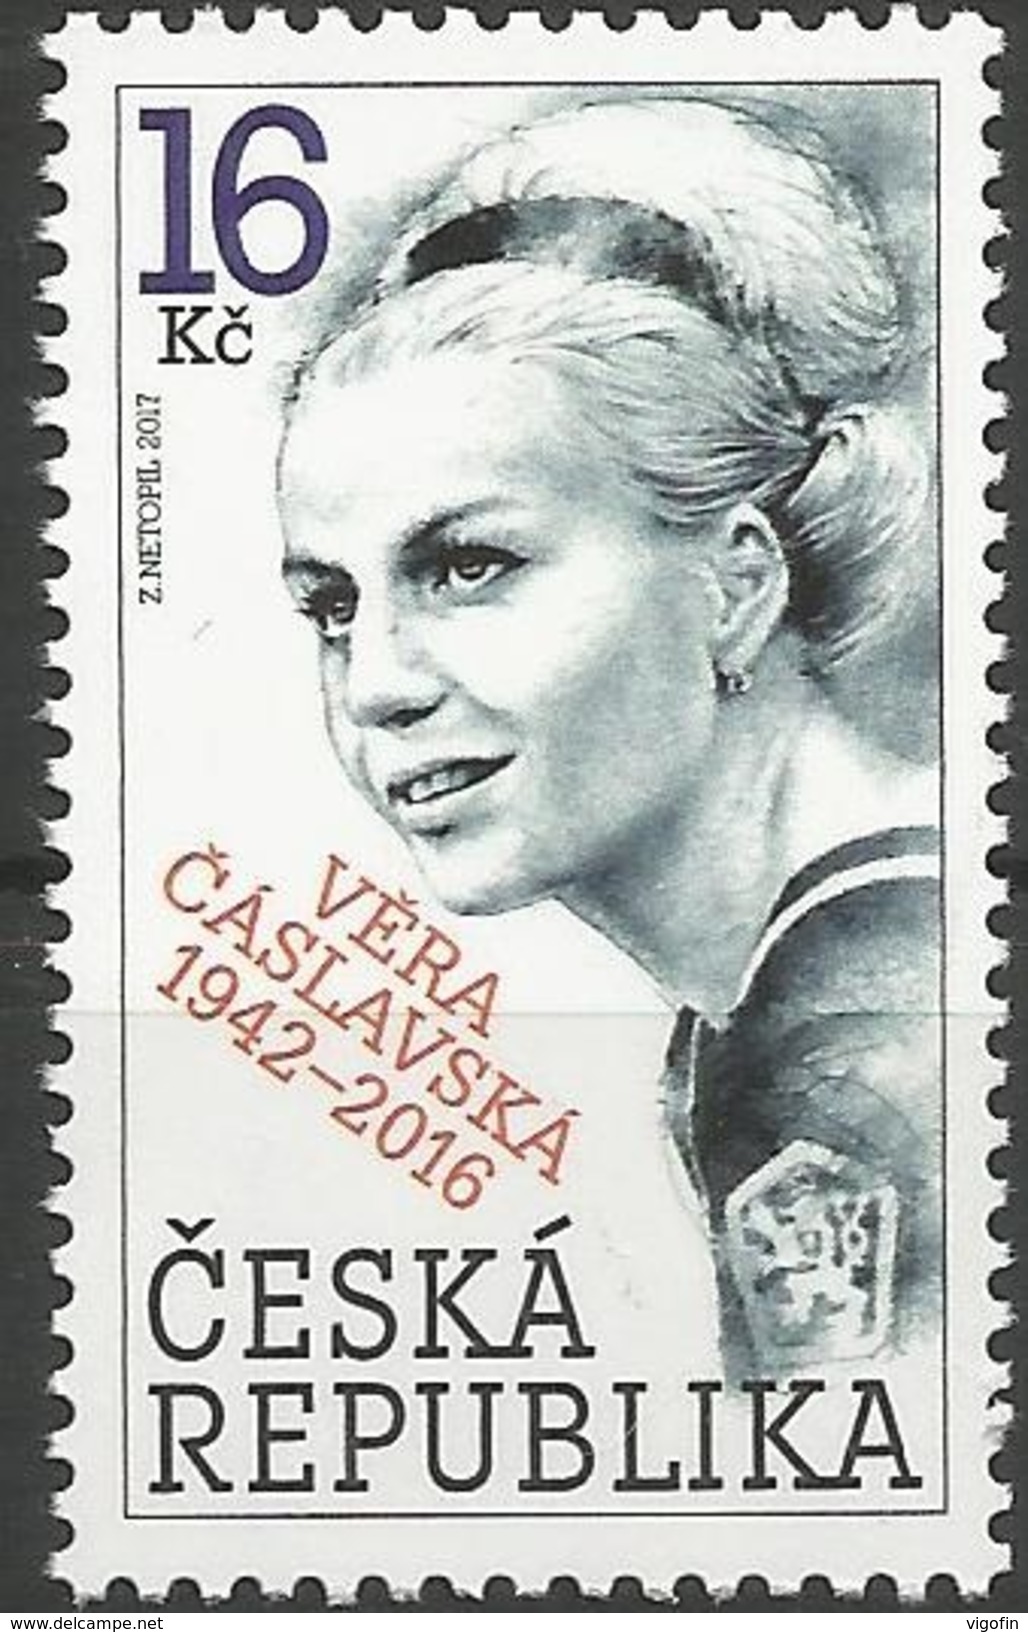 CZ 2017-924 VERS CHASLVSKA. CZECH REPUBLIK, 1 X 1v, MNH - Blokken & Velletjes